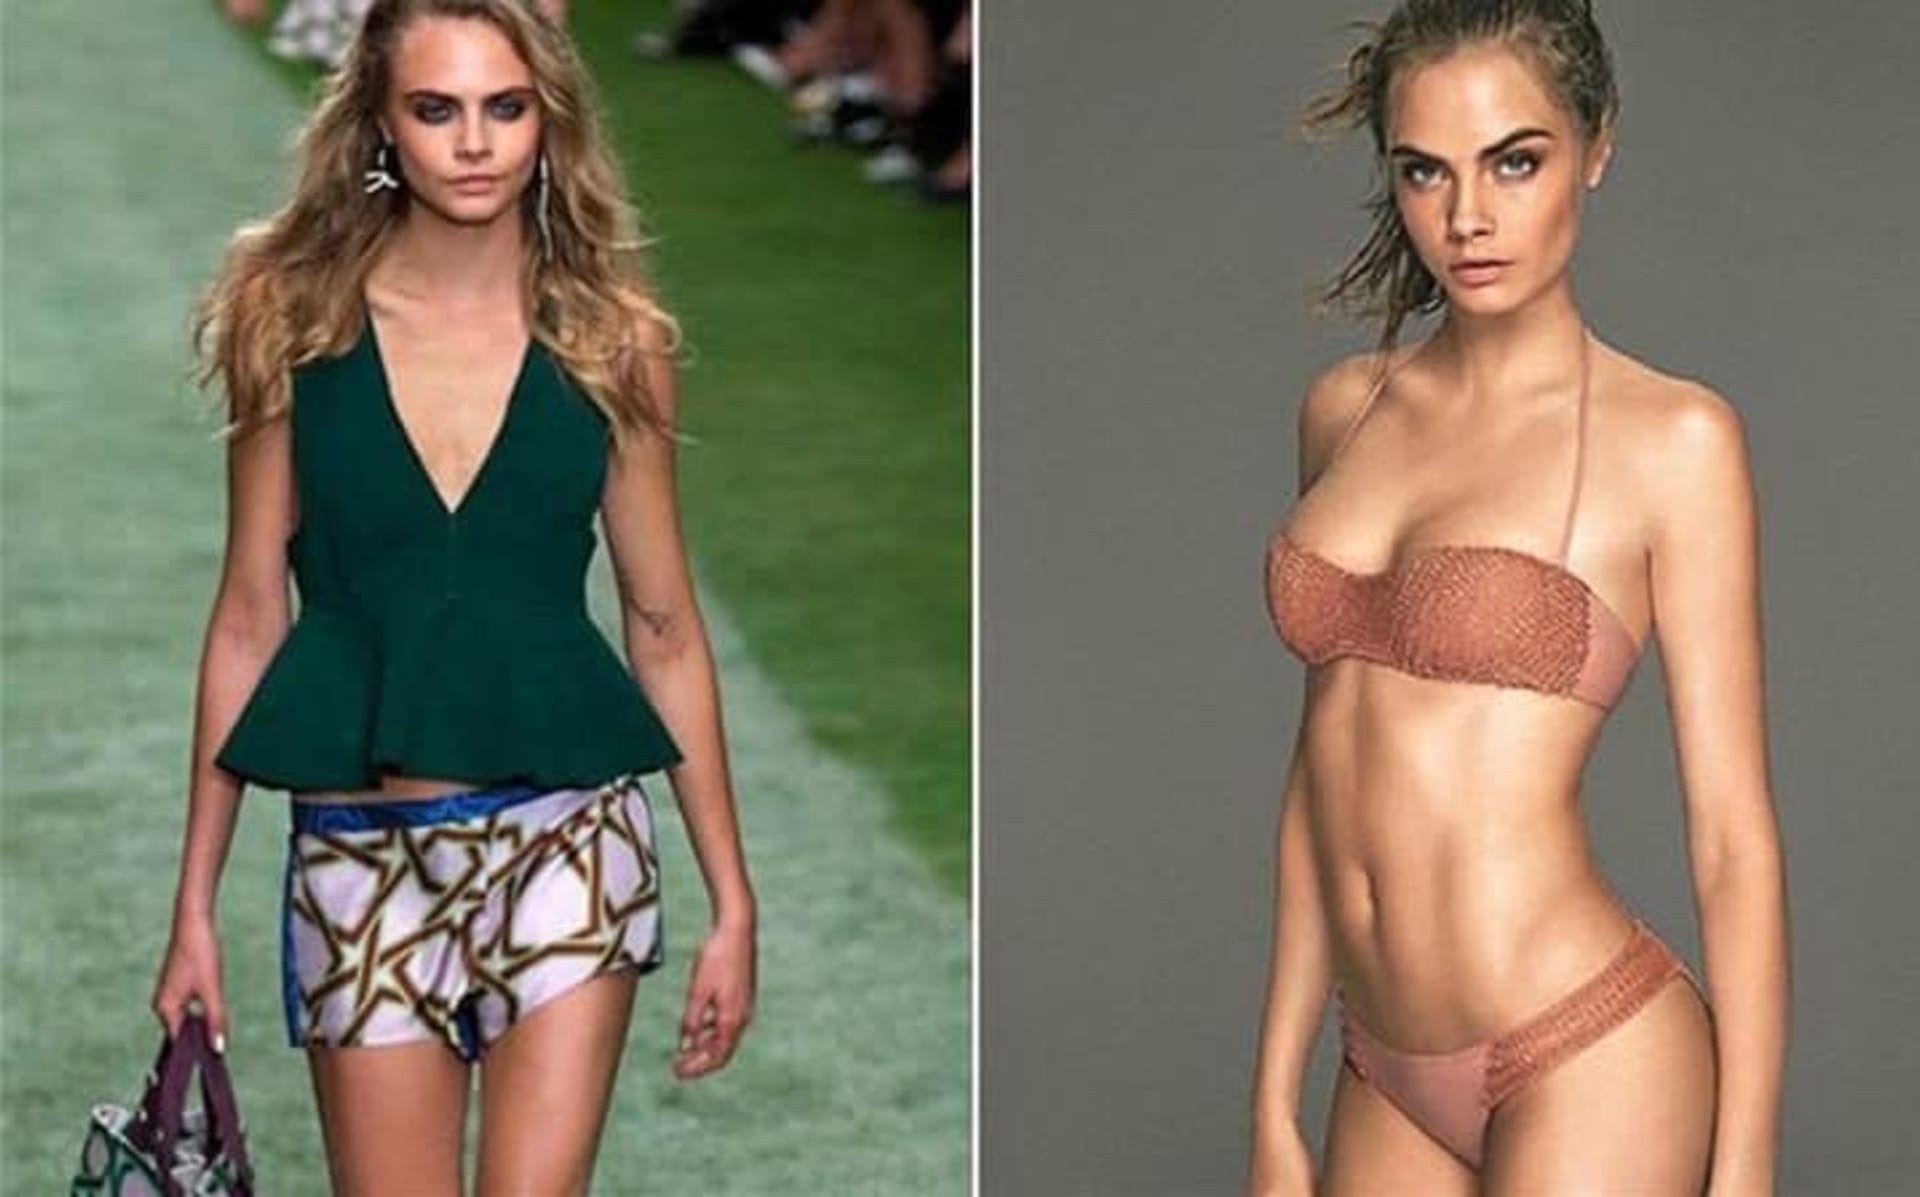 Supermodelka Cara Delevigne se objevila na fotografiích jedné reklamní kampaně s několikanásobně většími prsy. Zázračně zmizelo také její tetování.